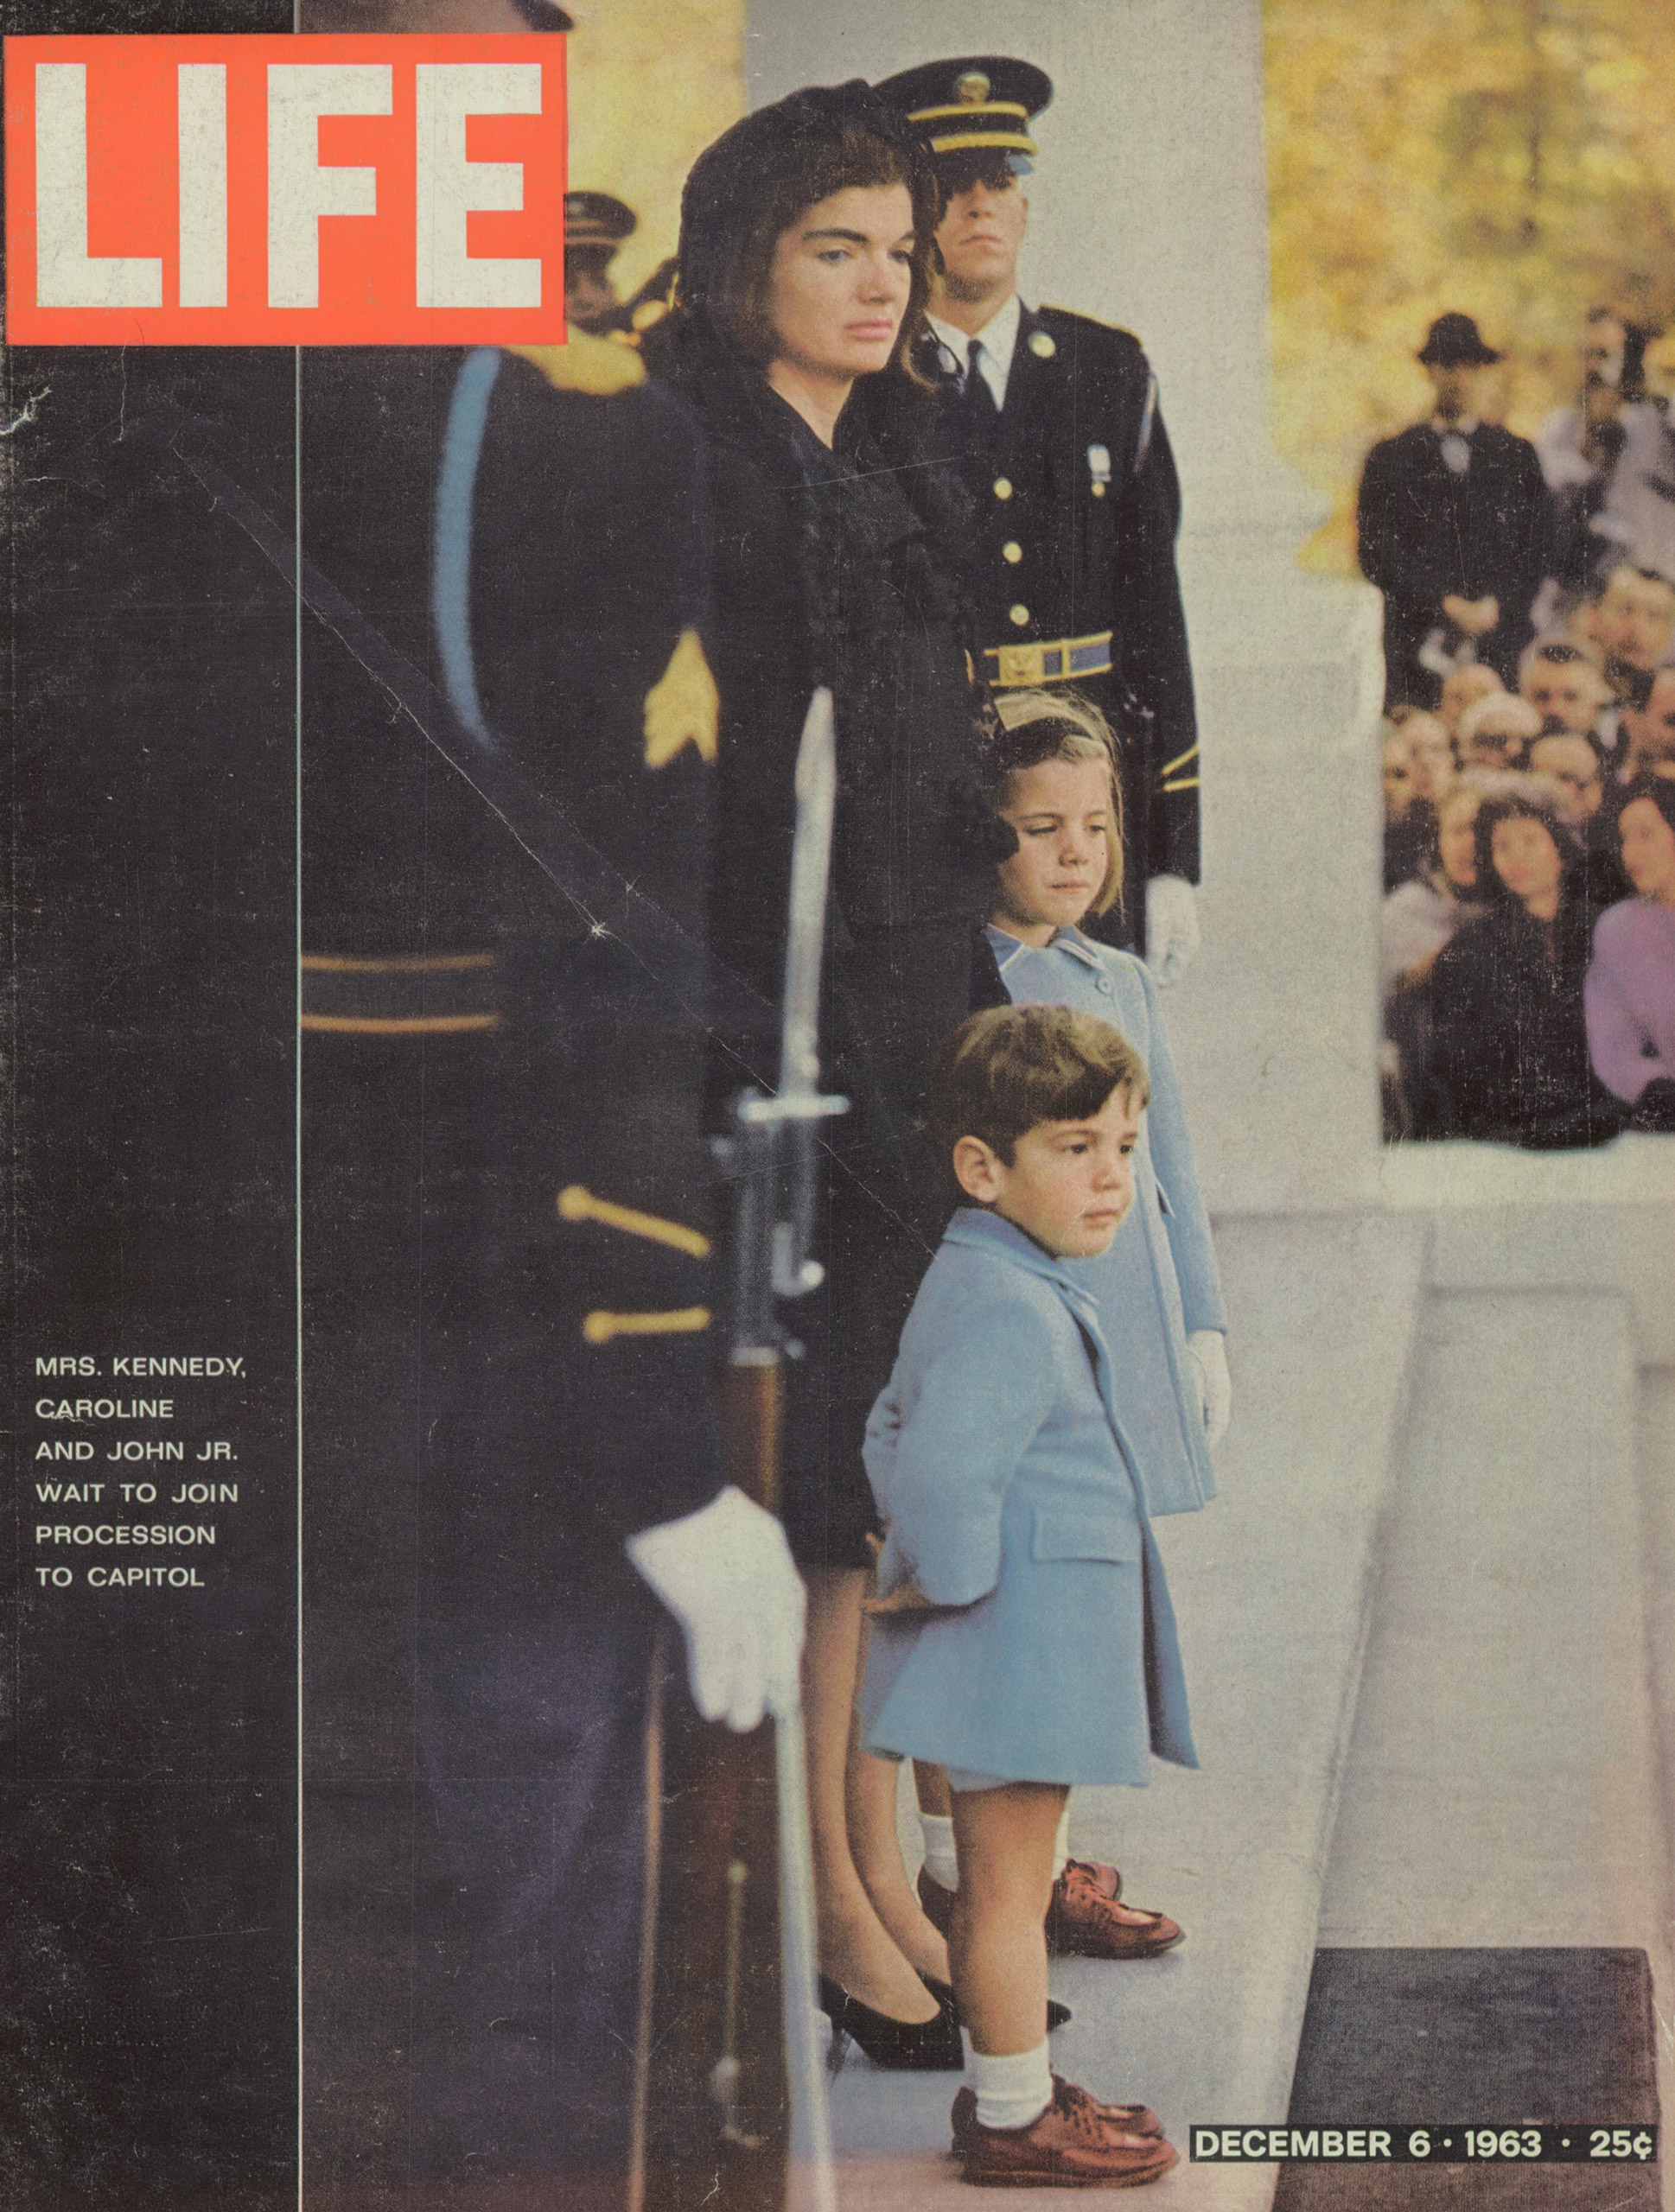 Dec. 6, 1963 cover of LIFE magazine.